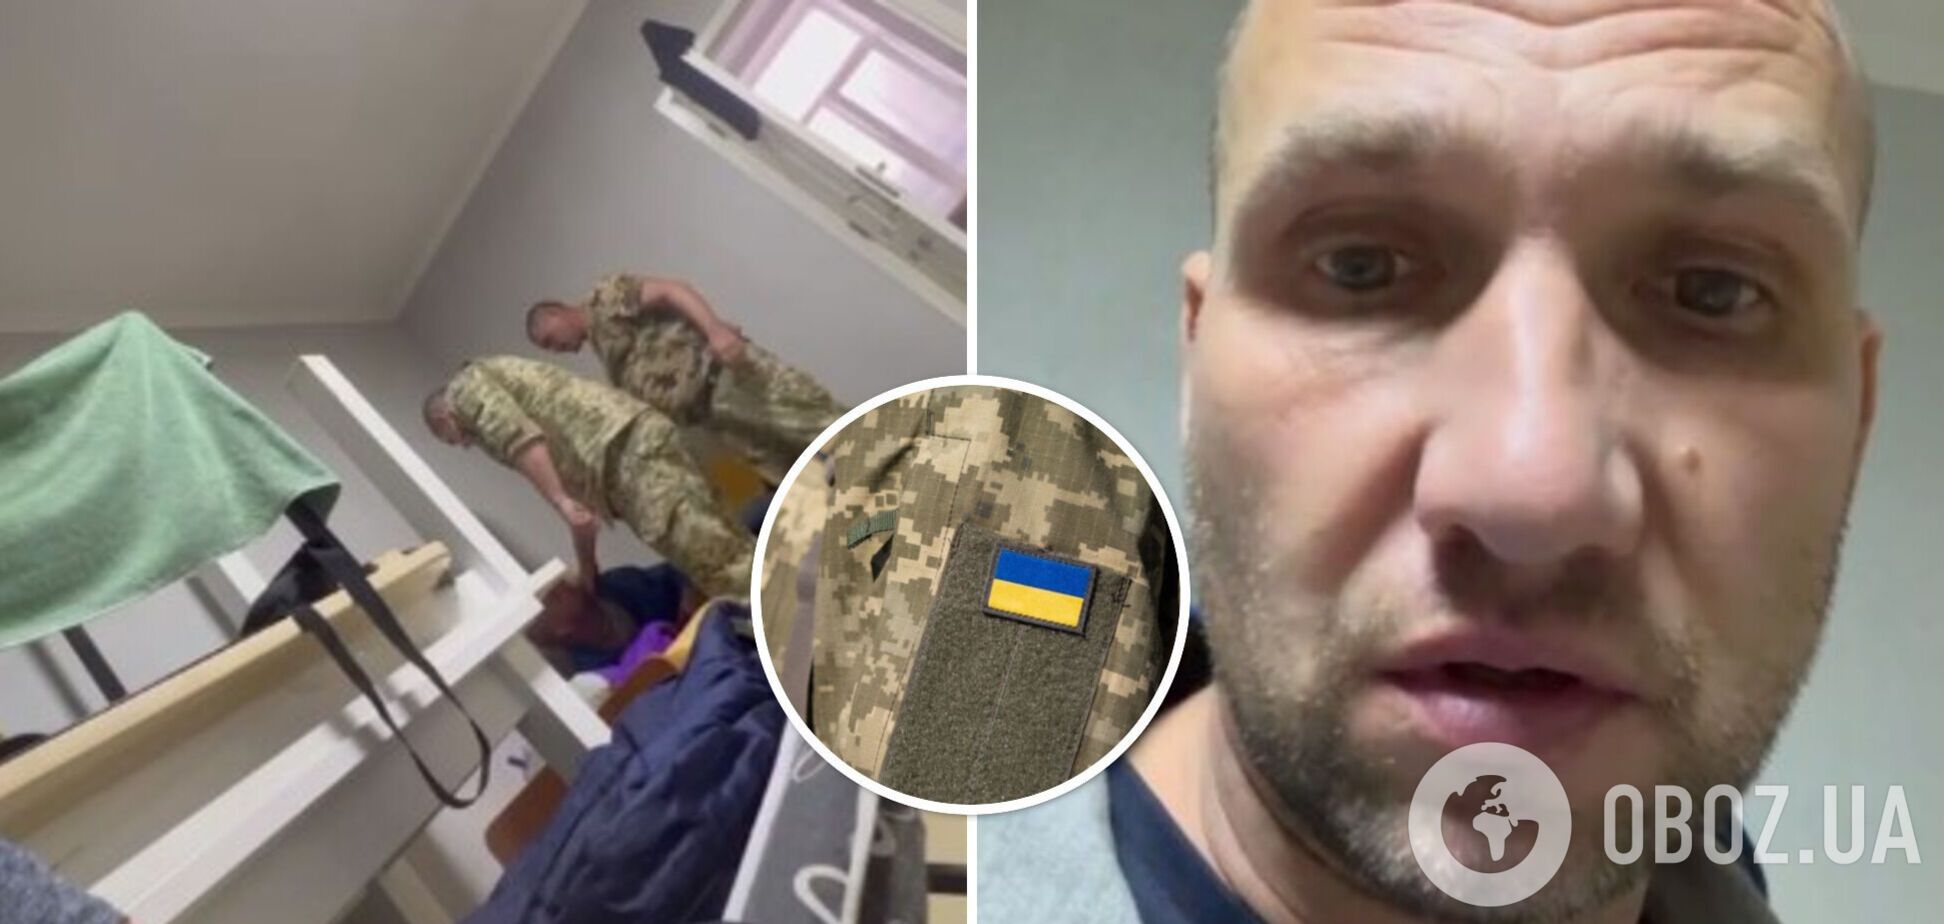 На Львовщине работники ТЦК избили уклониста: они отстранены, продолжается расследование. Видео